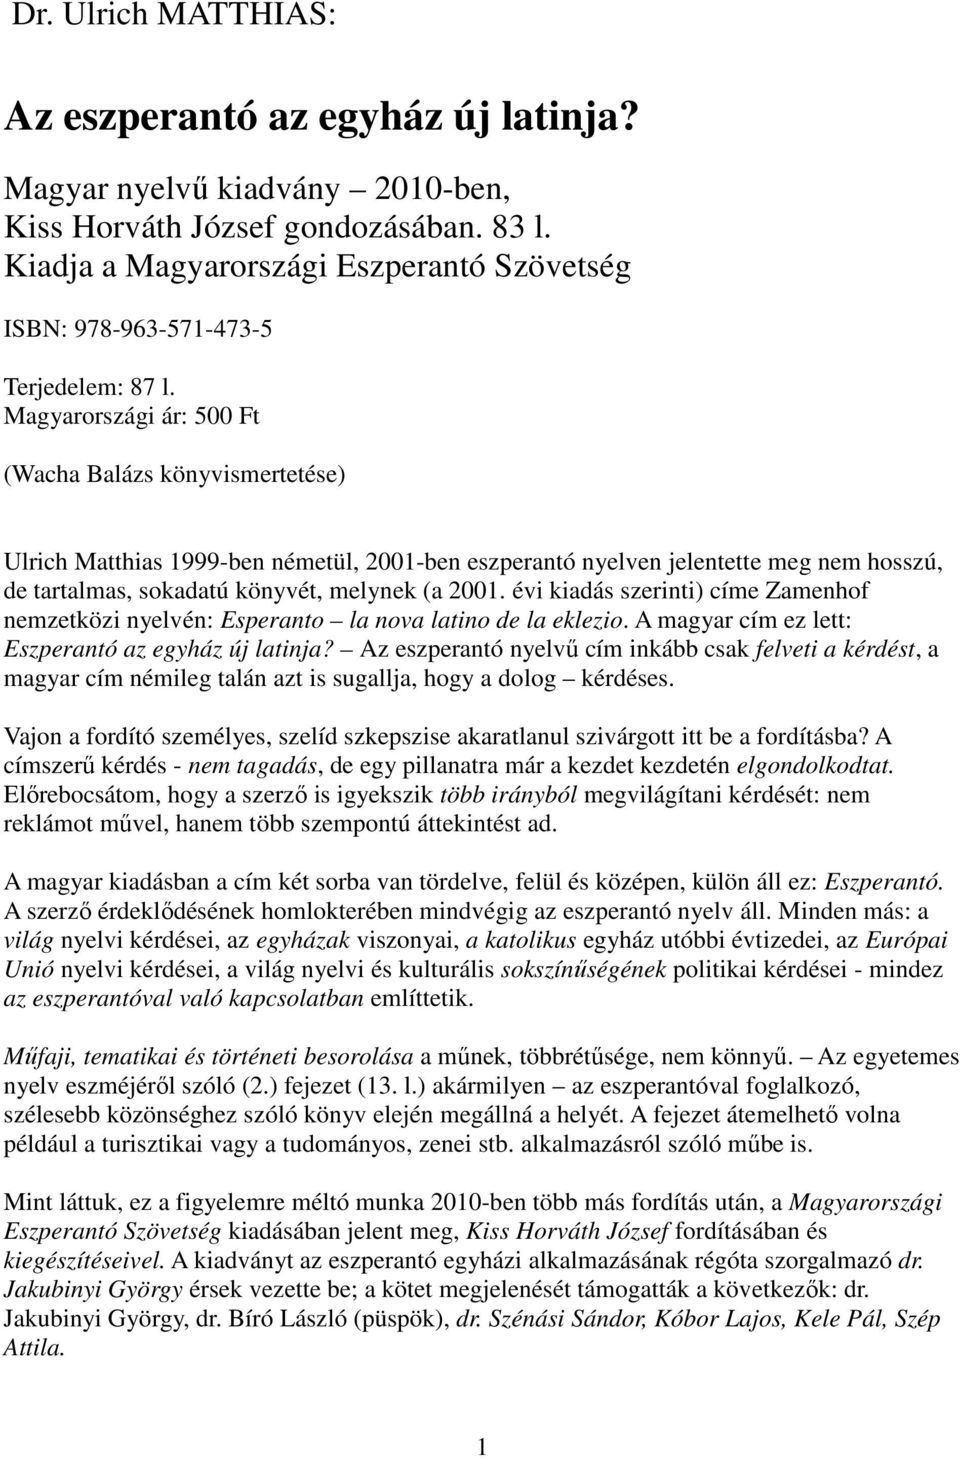 Magyarországi ár: 500 Ft (Wacha Balázs könyvismertetése) Ulrich Matthias 1999-ben németül, 2001-ben eszperantó nyelven jelentette meg nem hosszú, de tartalmas, sokadatú könyvét, melynek (a 2001.